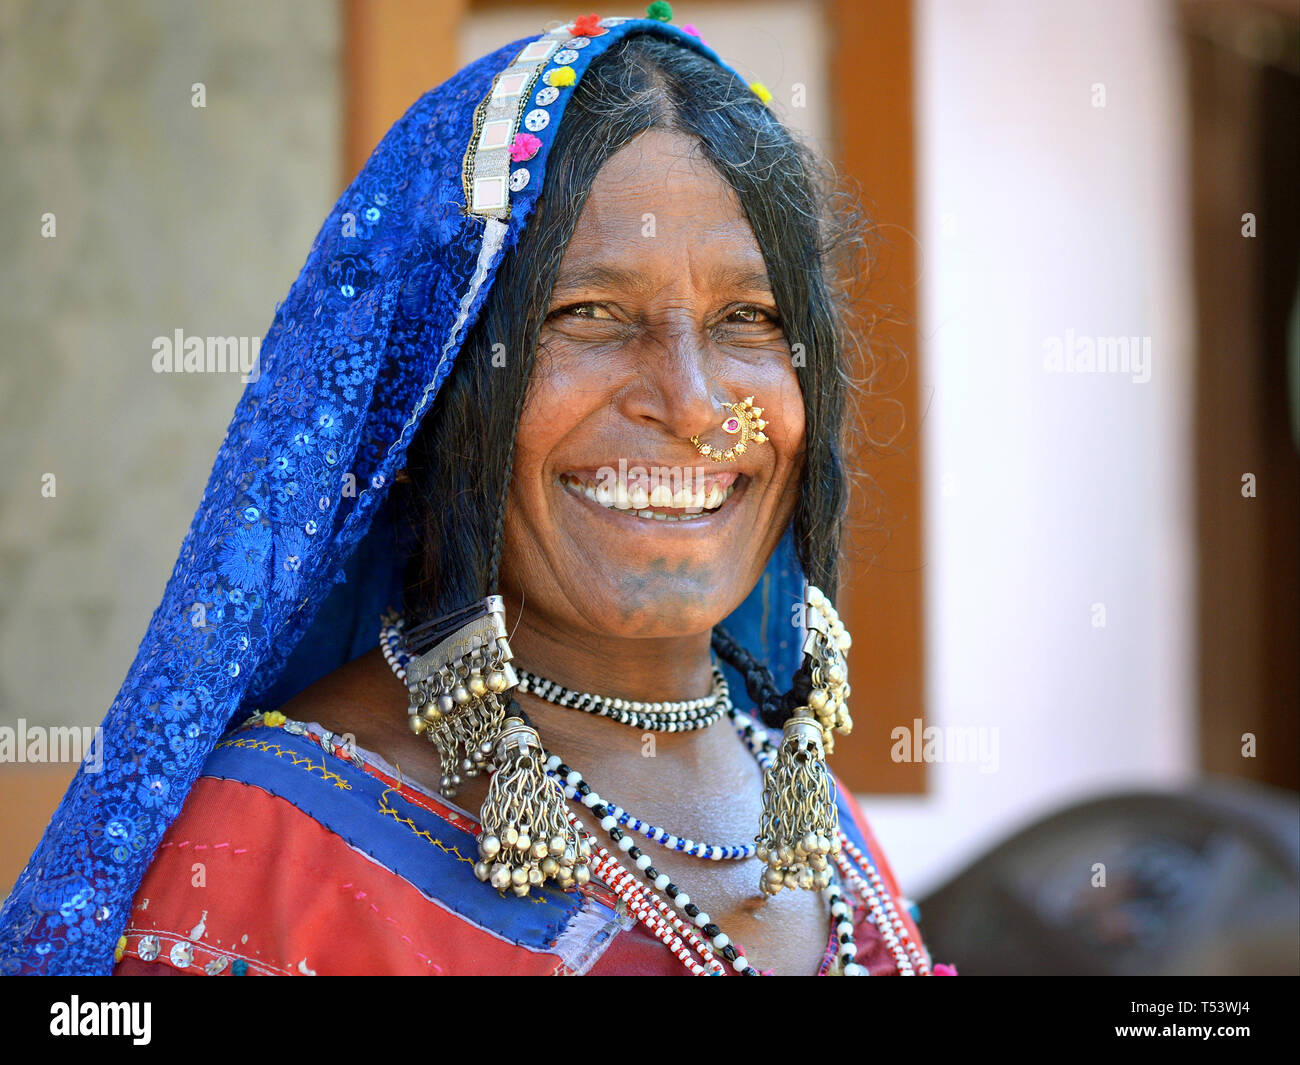 Personnes âgées Lambadi aka aka Banjara gitane indienne de Karnataka, en tenue traditionnelle déclinée pour l'appareil photo. Banque D'Images